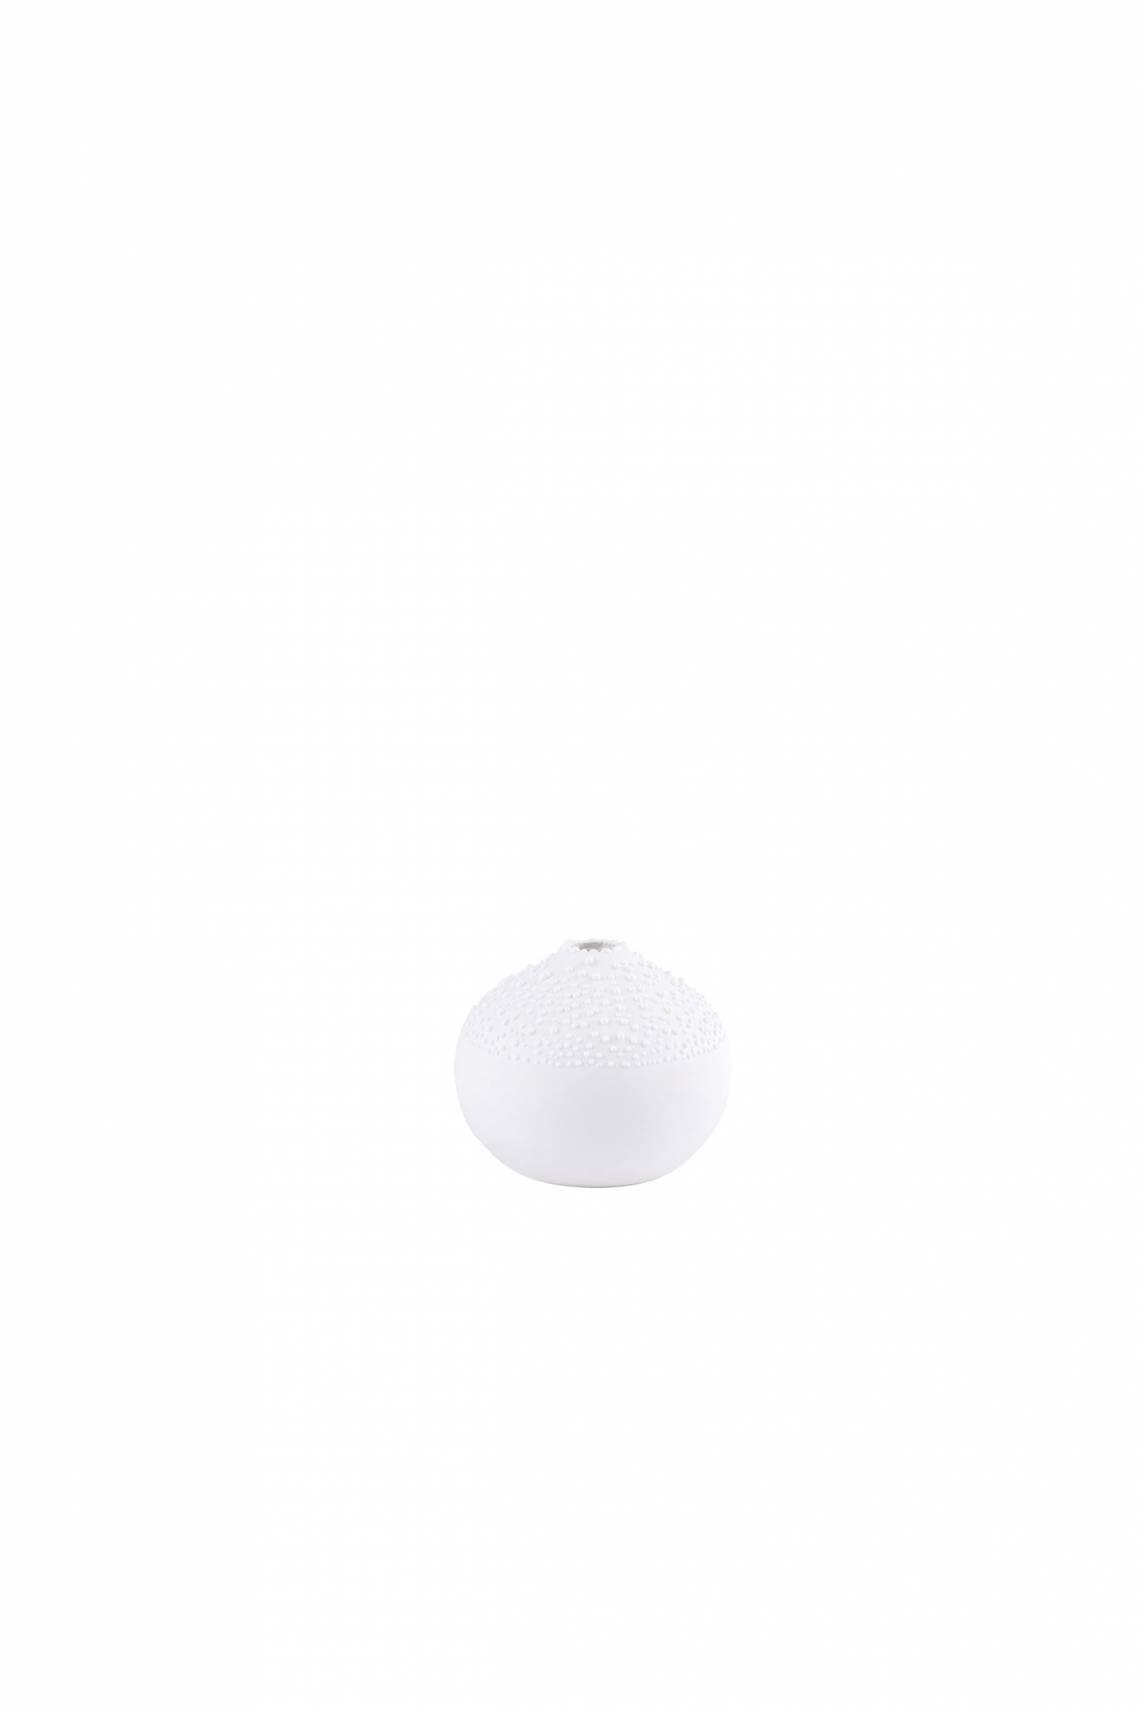 räder - Weiße Perlenvase - Design 1